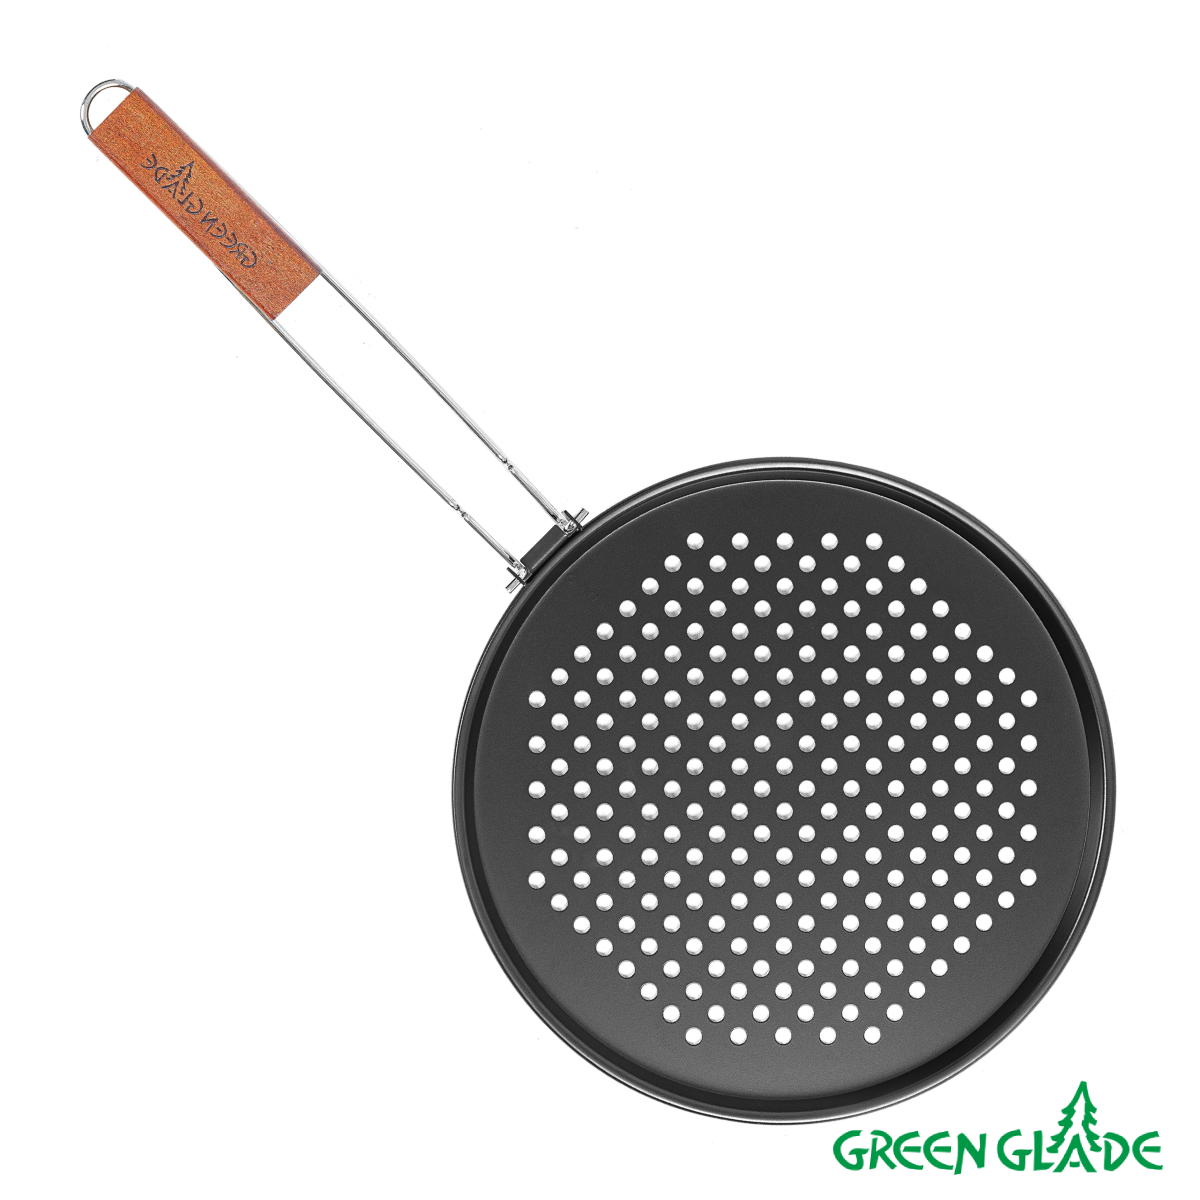 Сковорода-гриль Green Glade 7402 с антипригарным покрытием